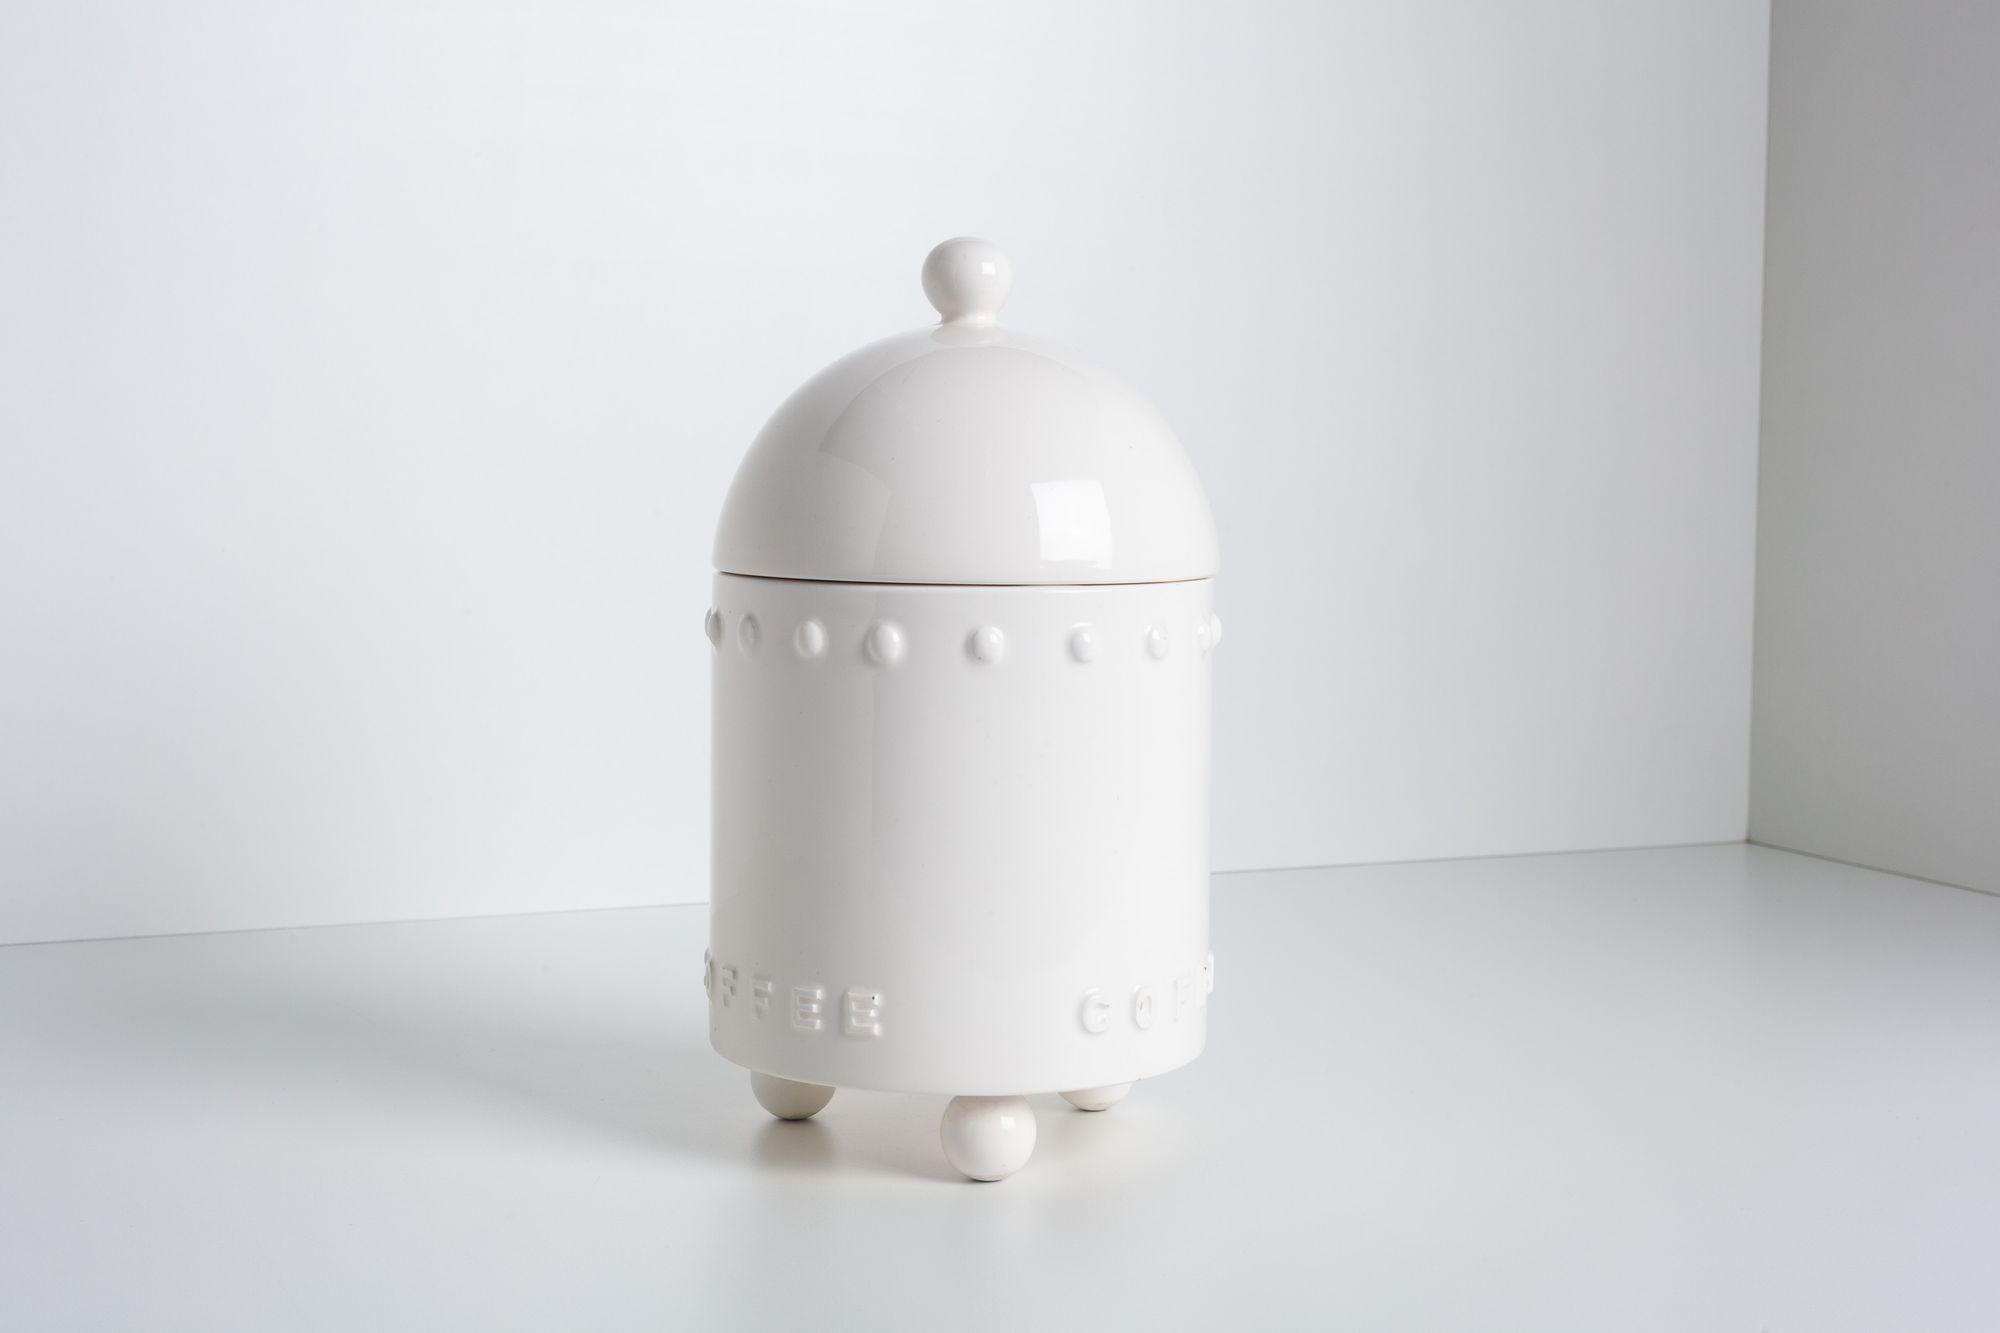 Äußerst seltener Porzellan-Kaffeebehälter für Swid Powell von Stanley Tigerman, dem Gewinner des 